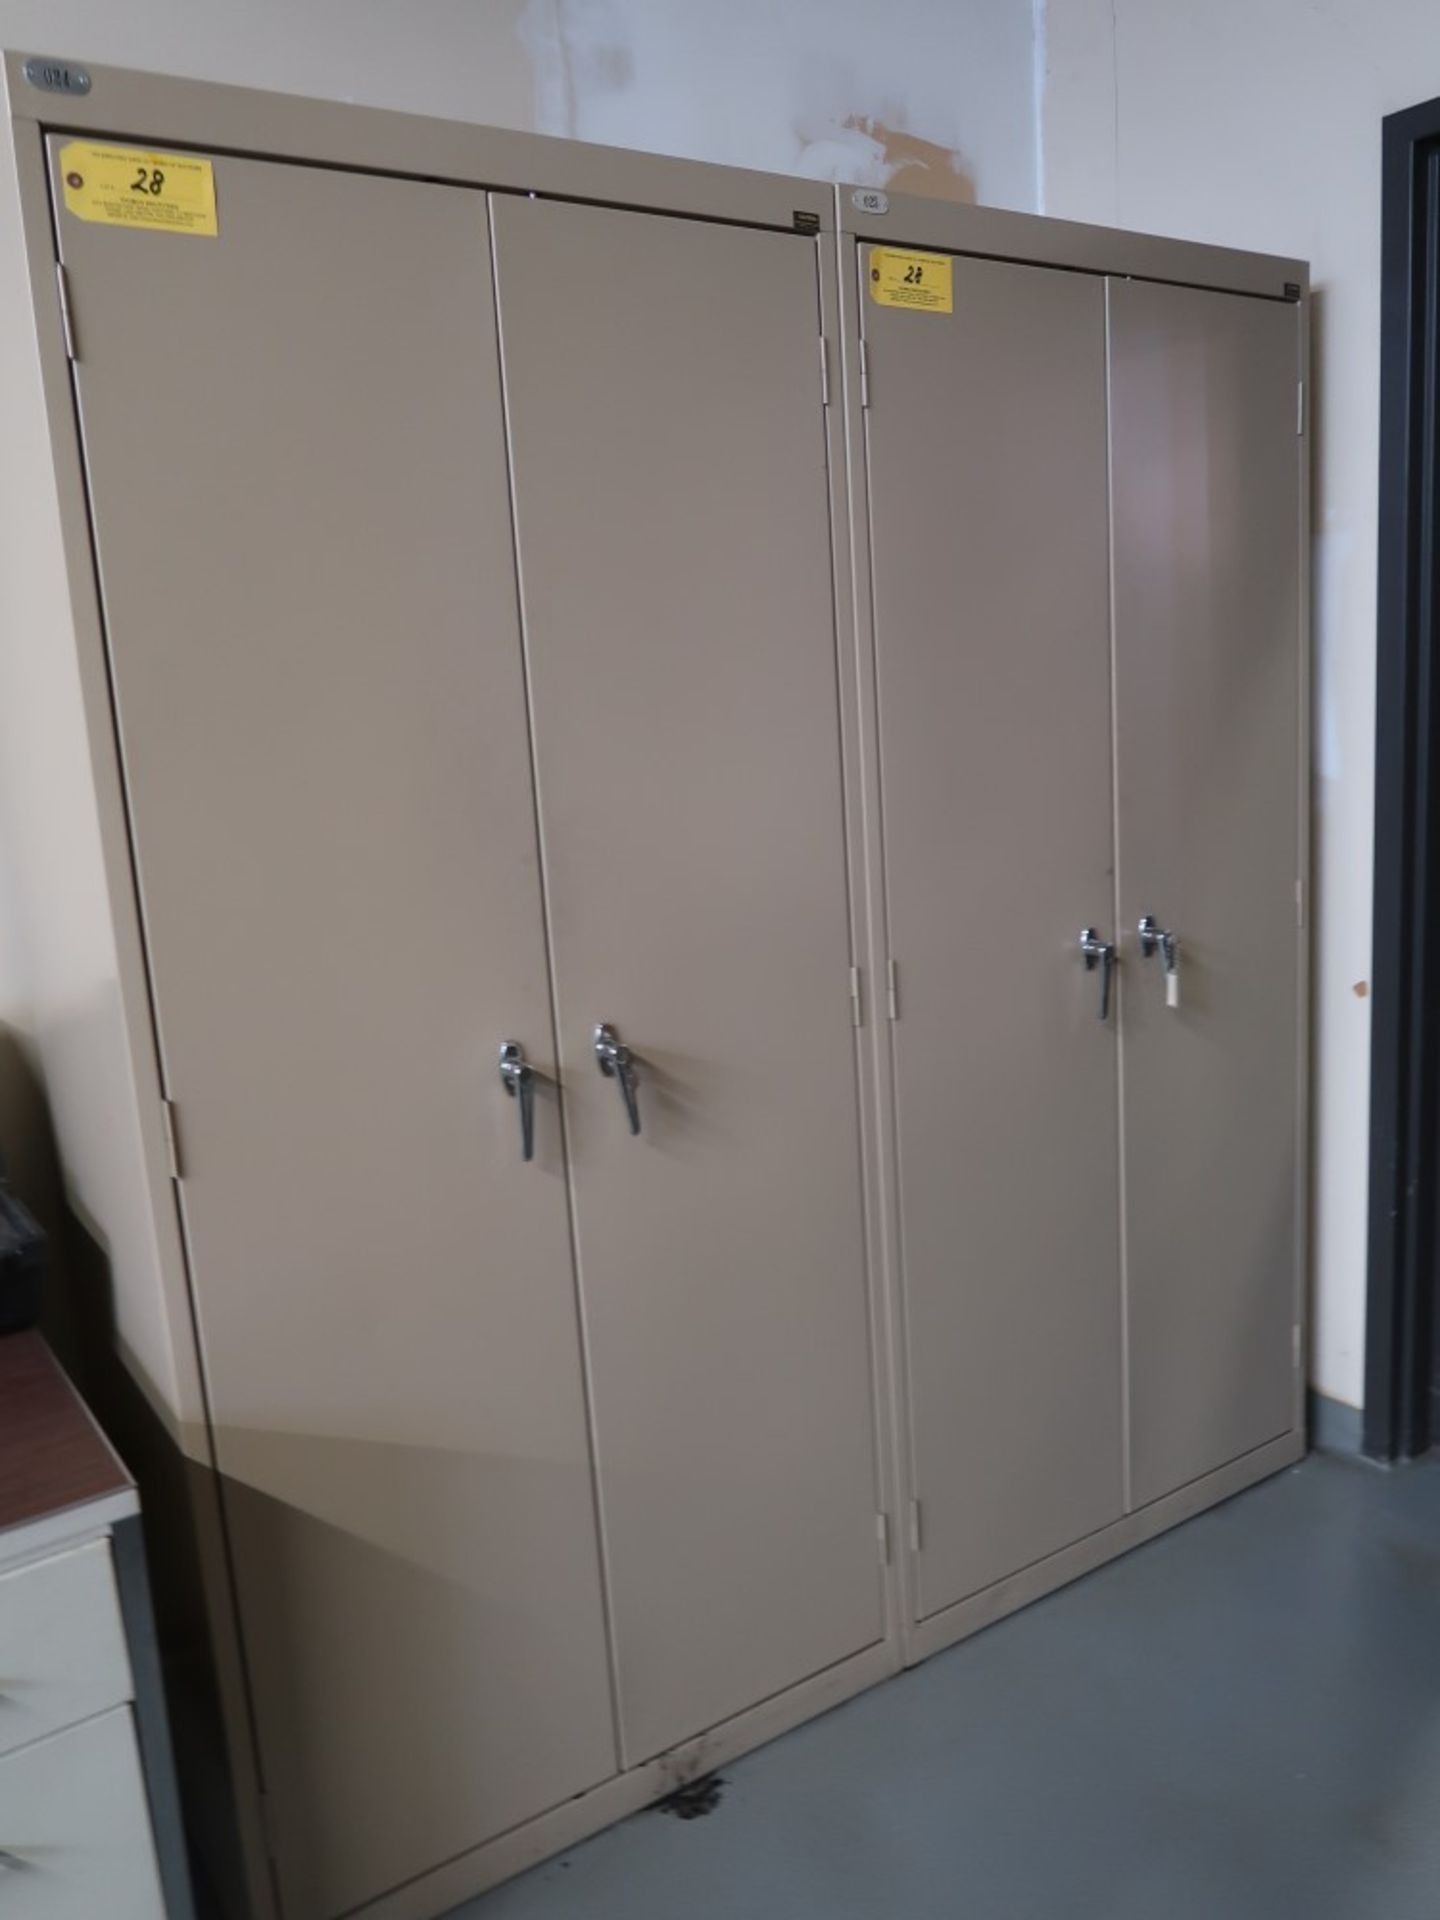 (2) Global 2-Door Metal Storage Cabinets